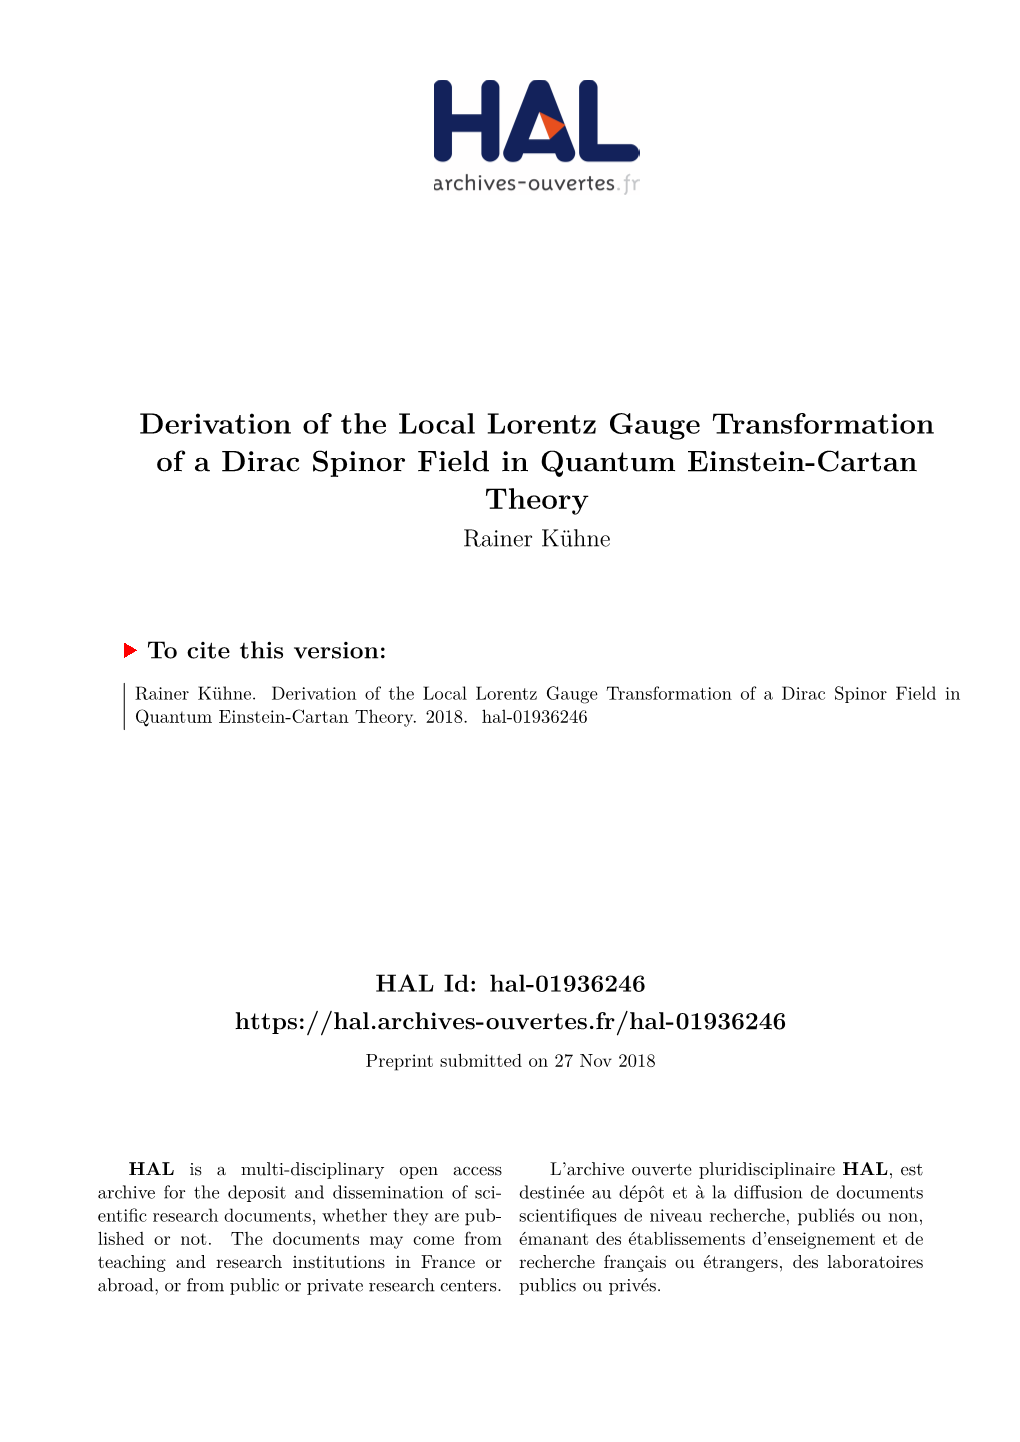 Derivation of the Local Lorentz Gauge Transformation of a Dirac Spinor Field in Quantum Einstein-Cartan Theory Rainer Kühne